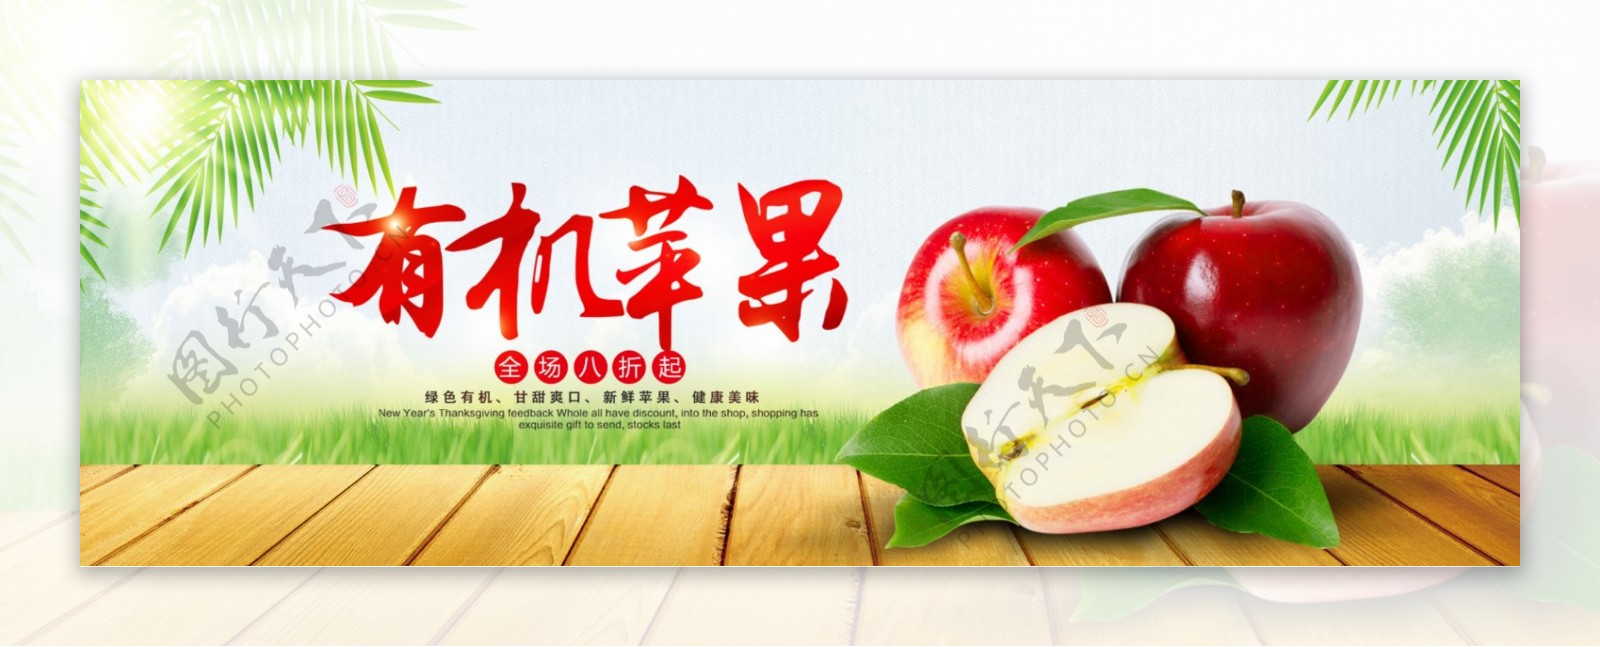 绿色清新苹果水果食品新鲜淘宝banner